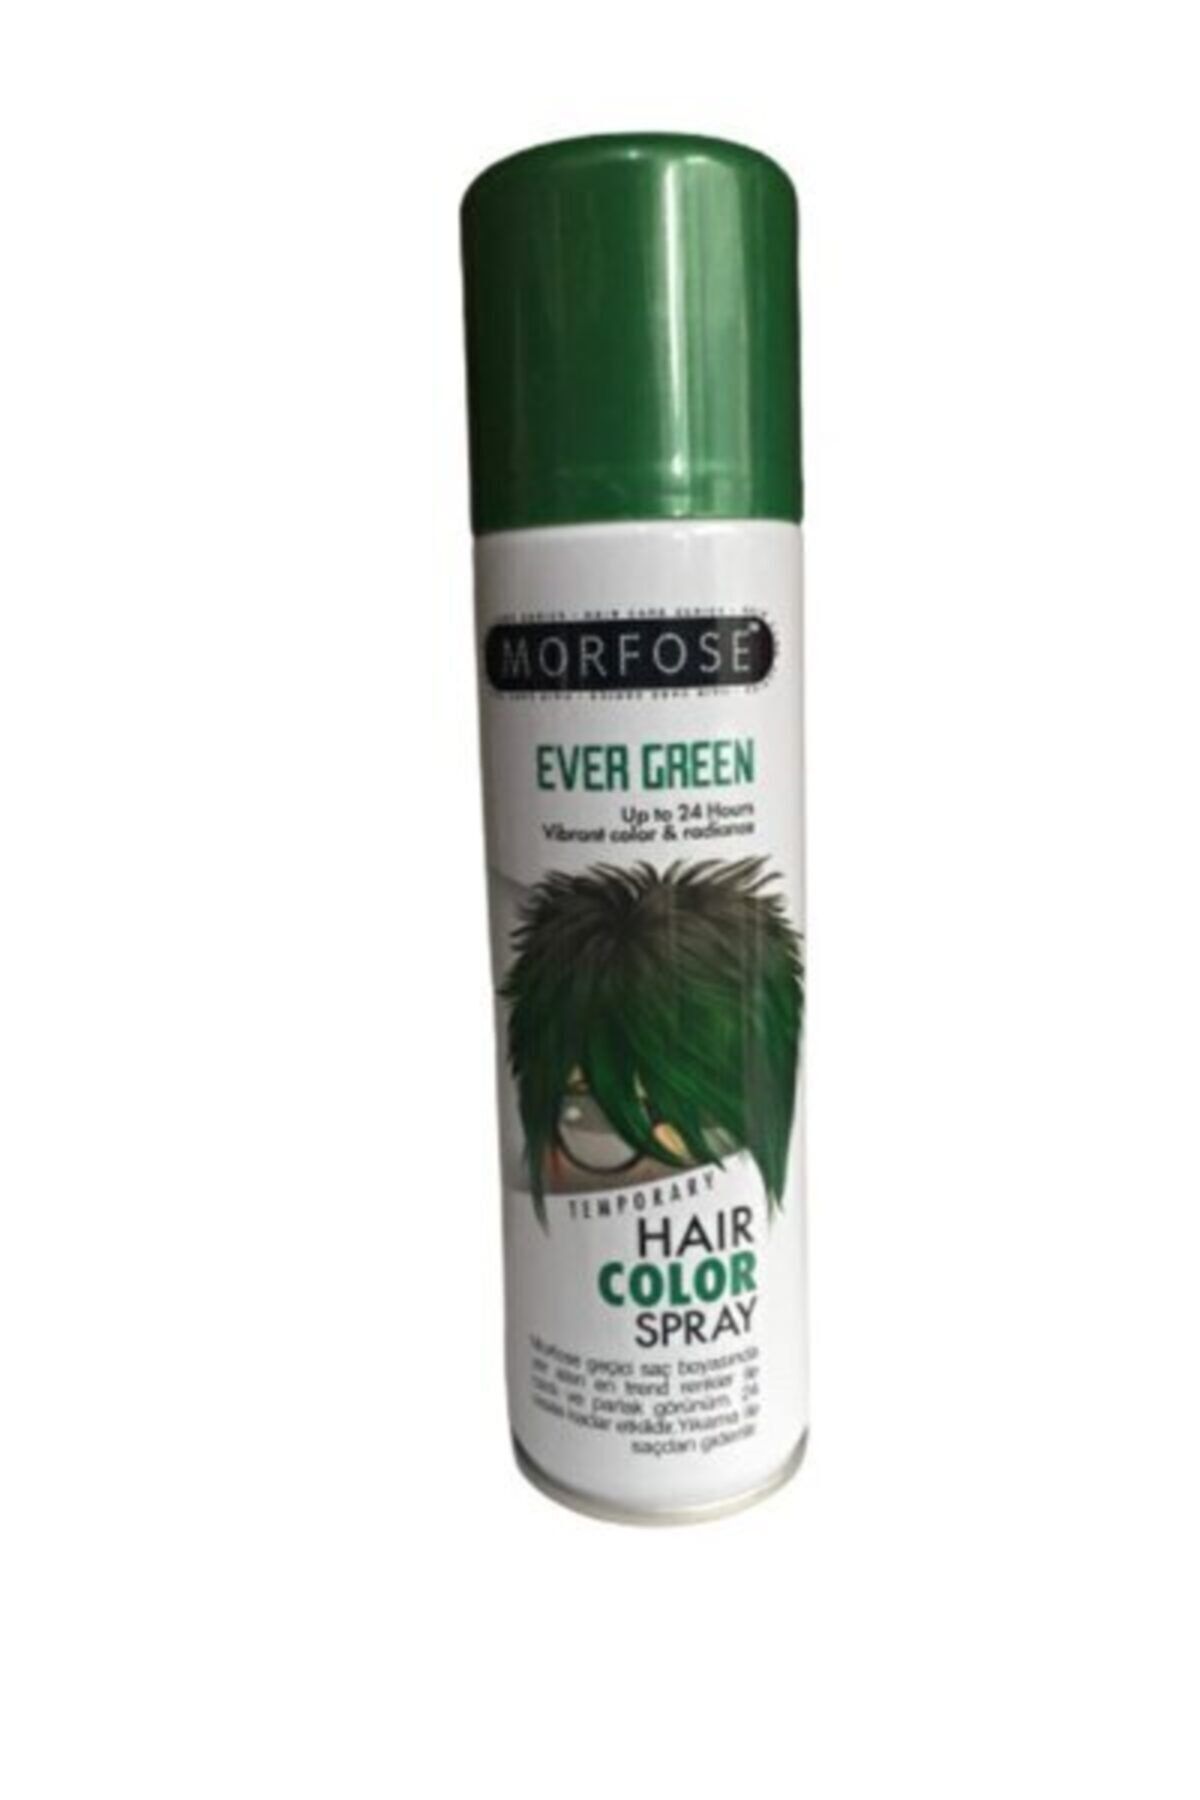 Morfose Ever Green Hair Color Spray 150 ml